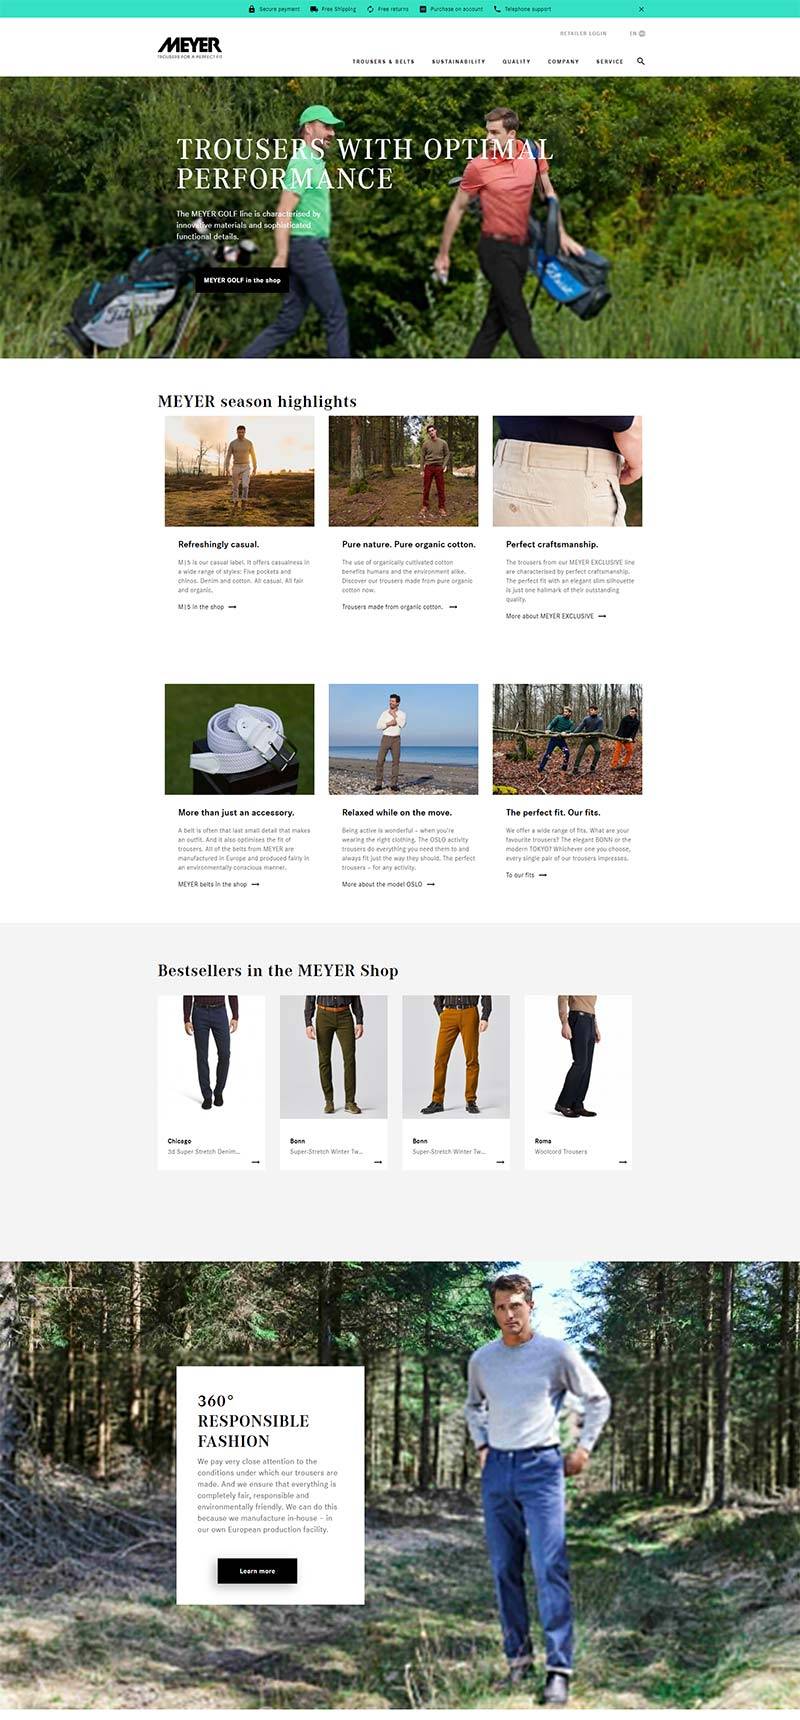 MEYER-HOSEN 德国男士裤装品牌购物网站